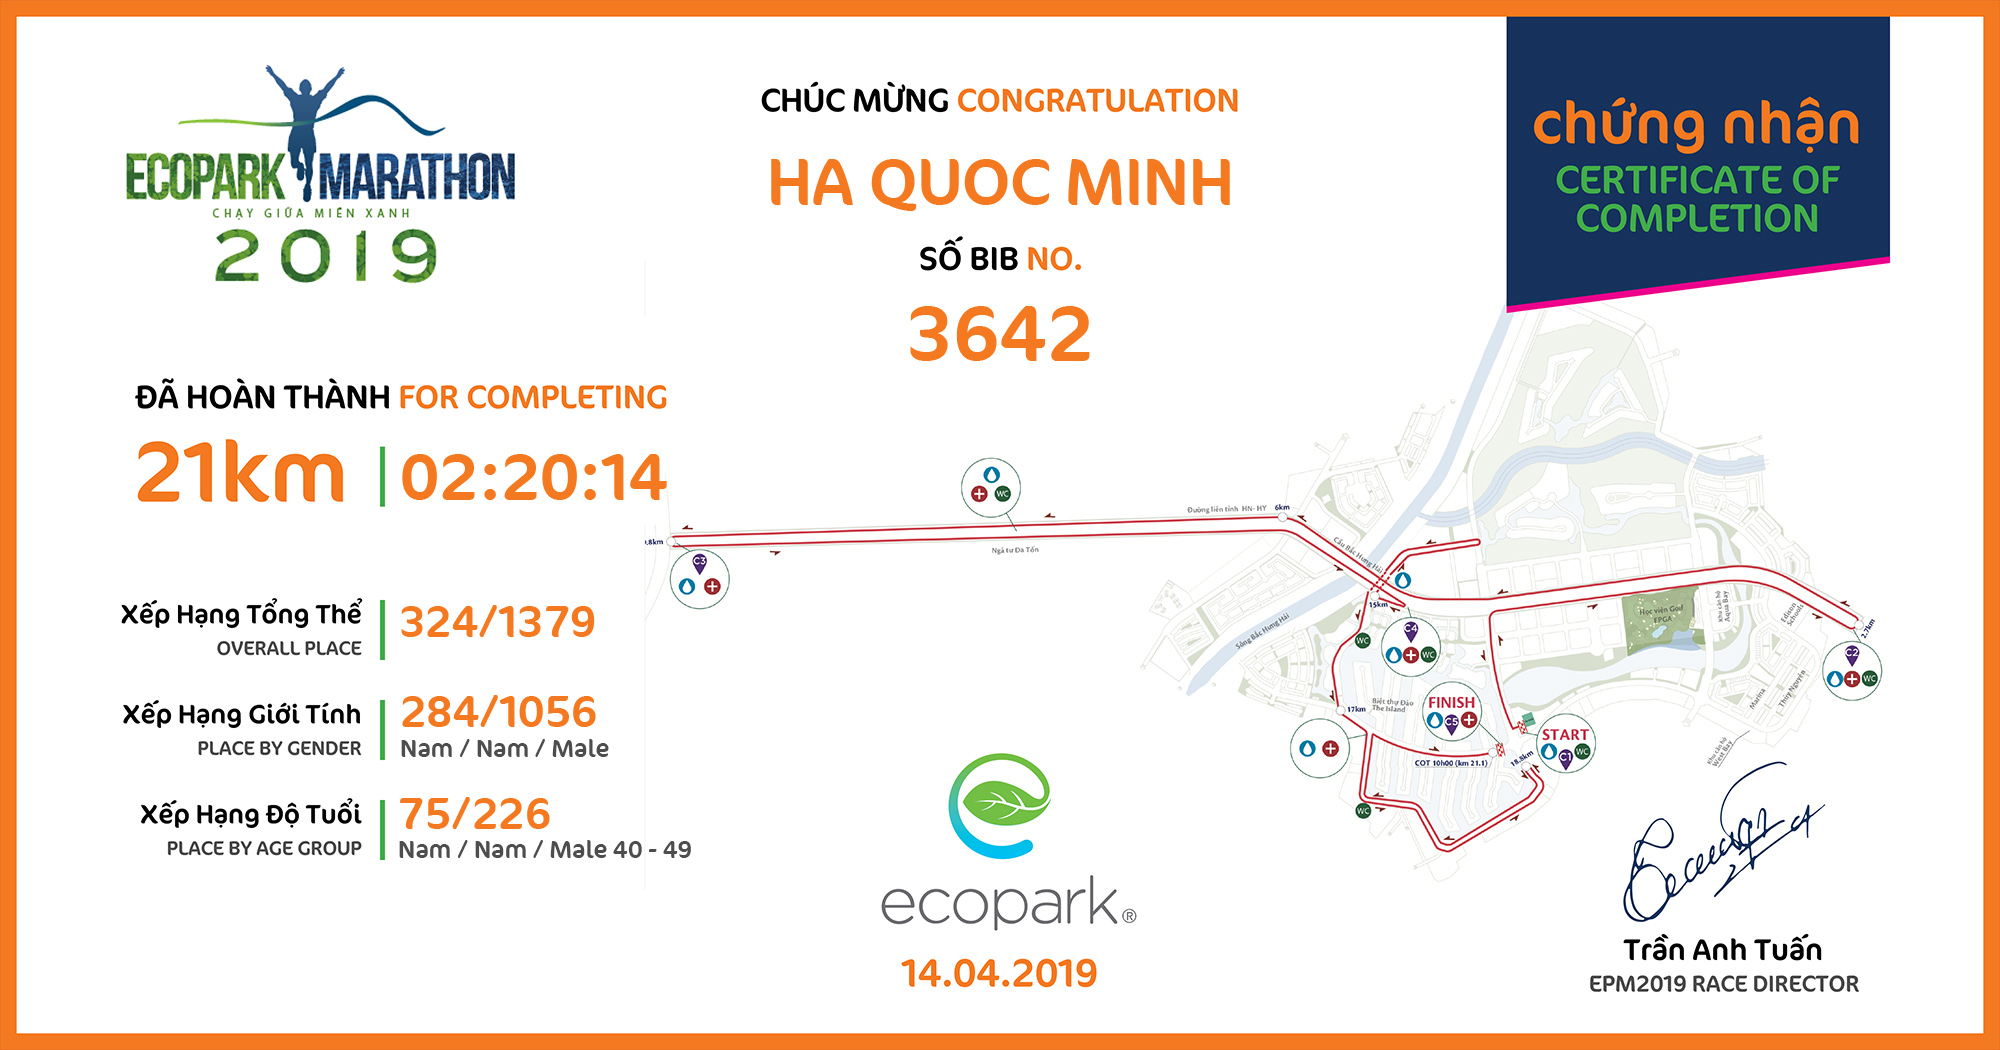 3642 - Ha Quoc Minh